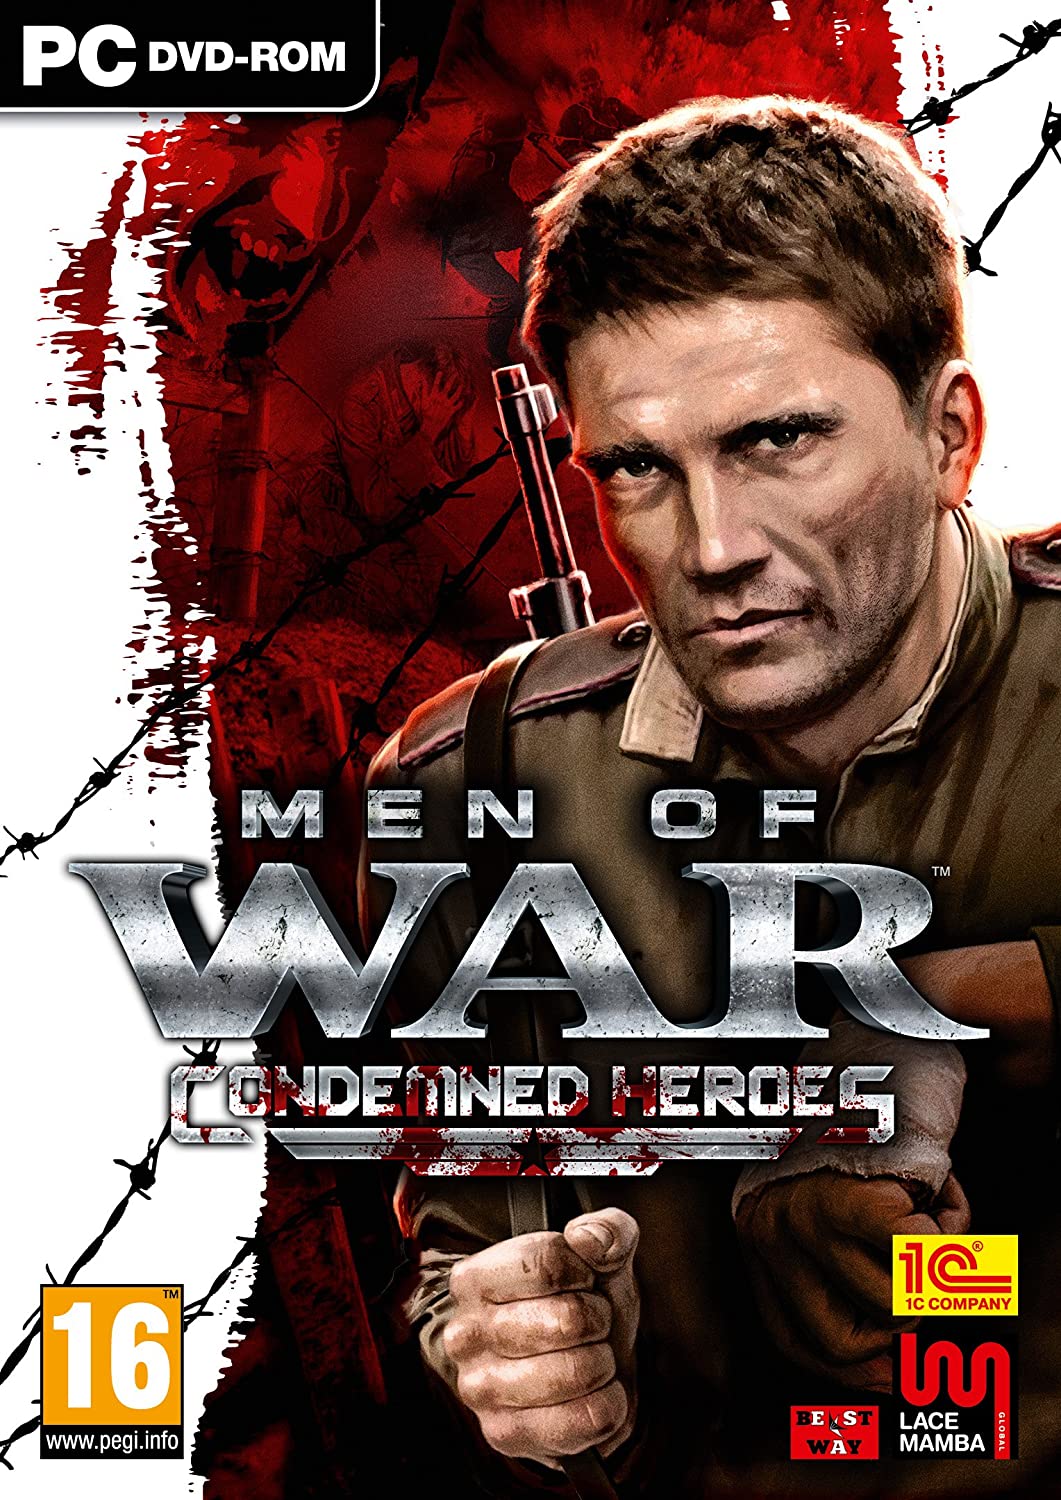 Men of War - Condemned Heroes (PC DVD)